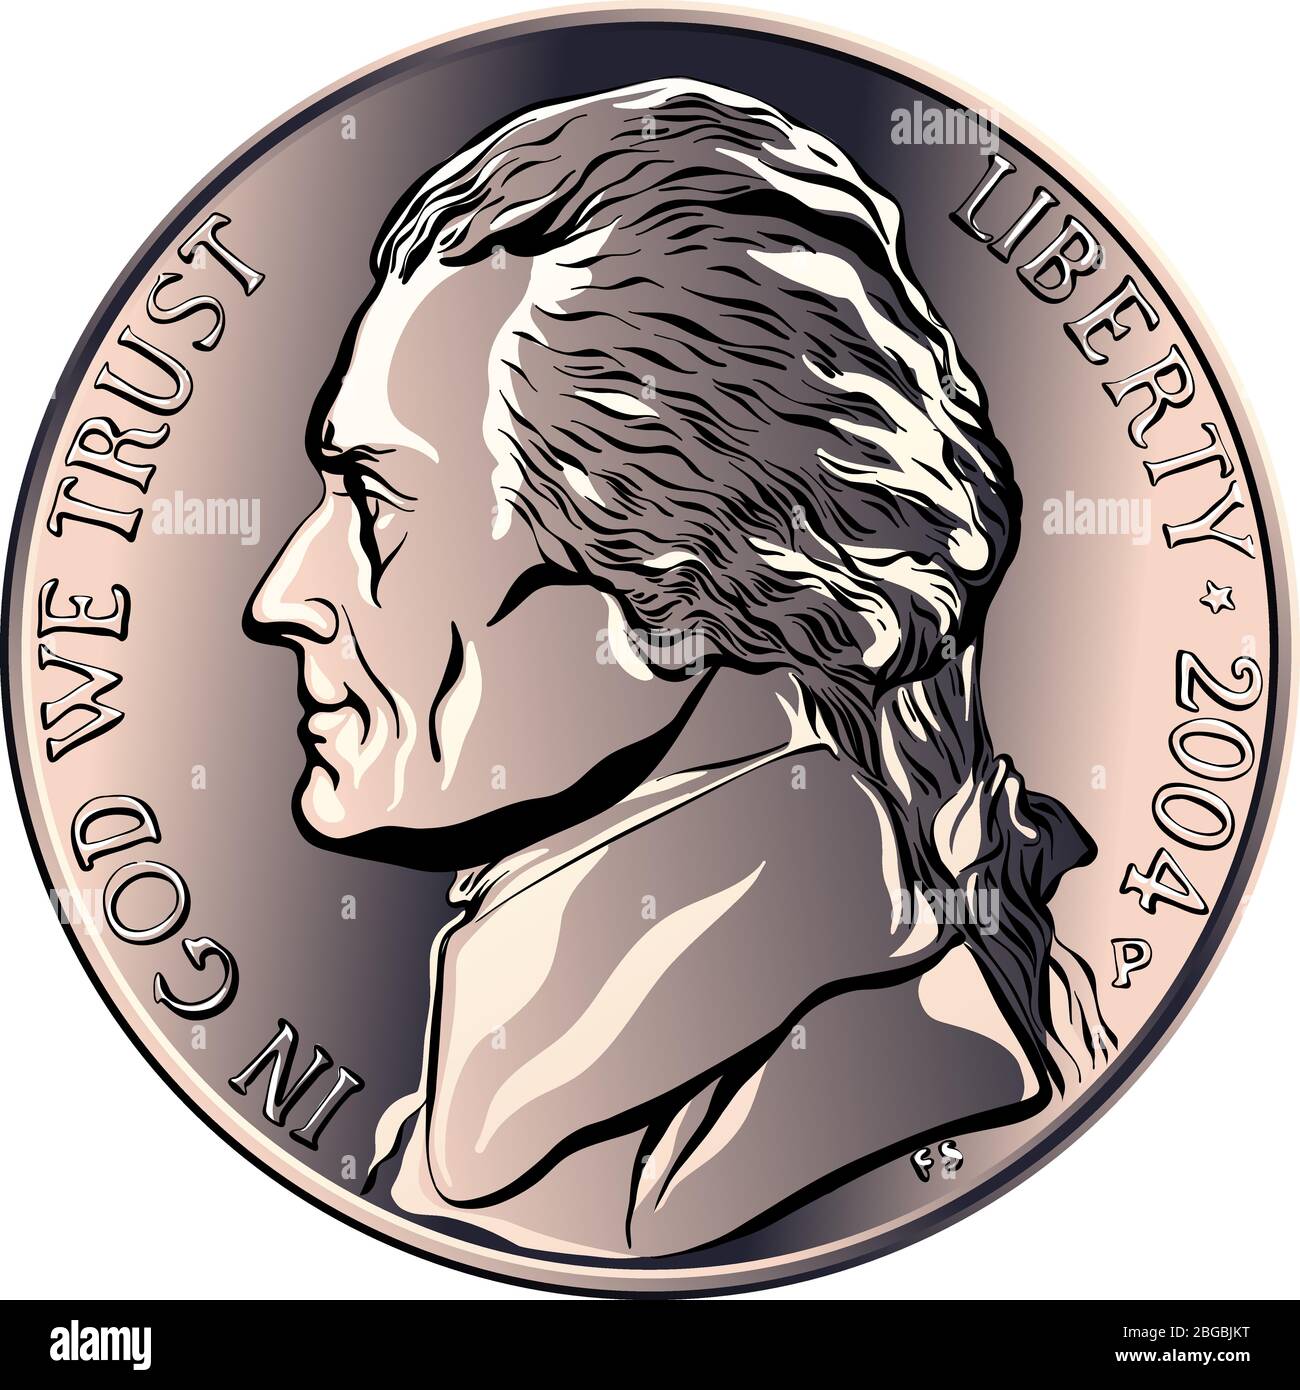 Jefferson nickel, argent américain, États-Unis pièce de cinq cents avec profil Thomas Jefferson, troisième président des États-Unis sur obverse Illustration de Vecteur